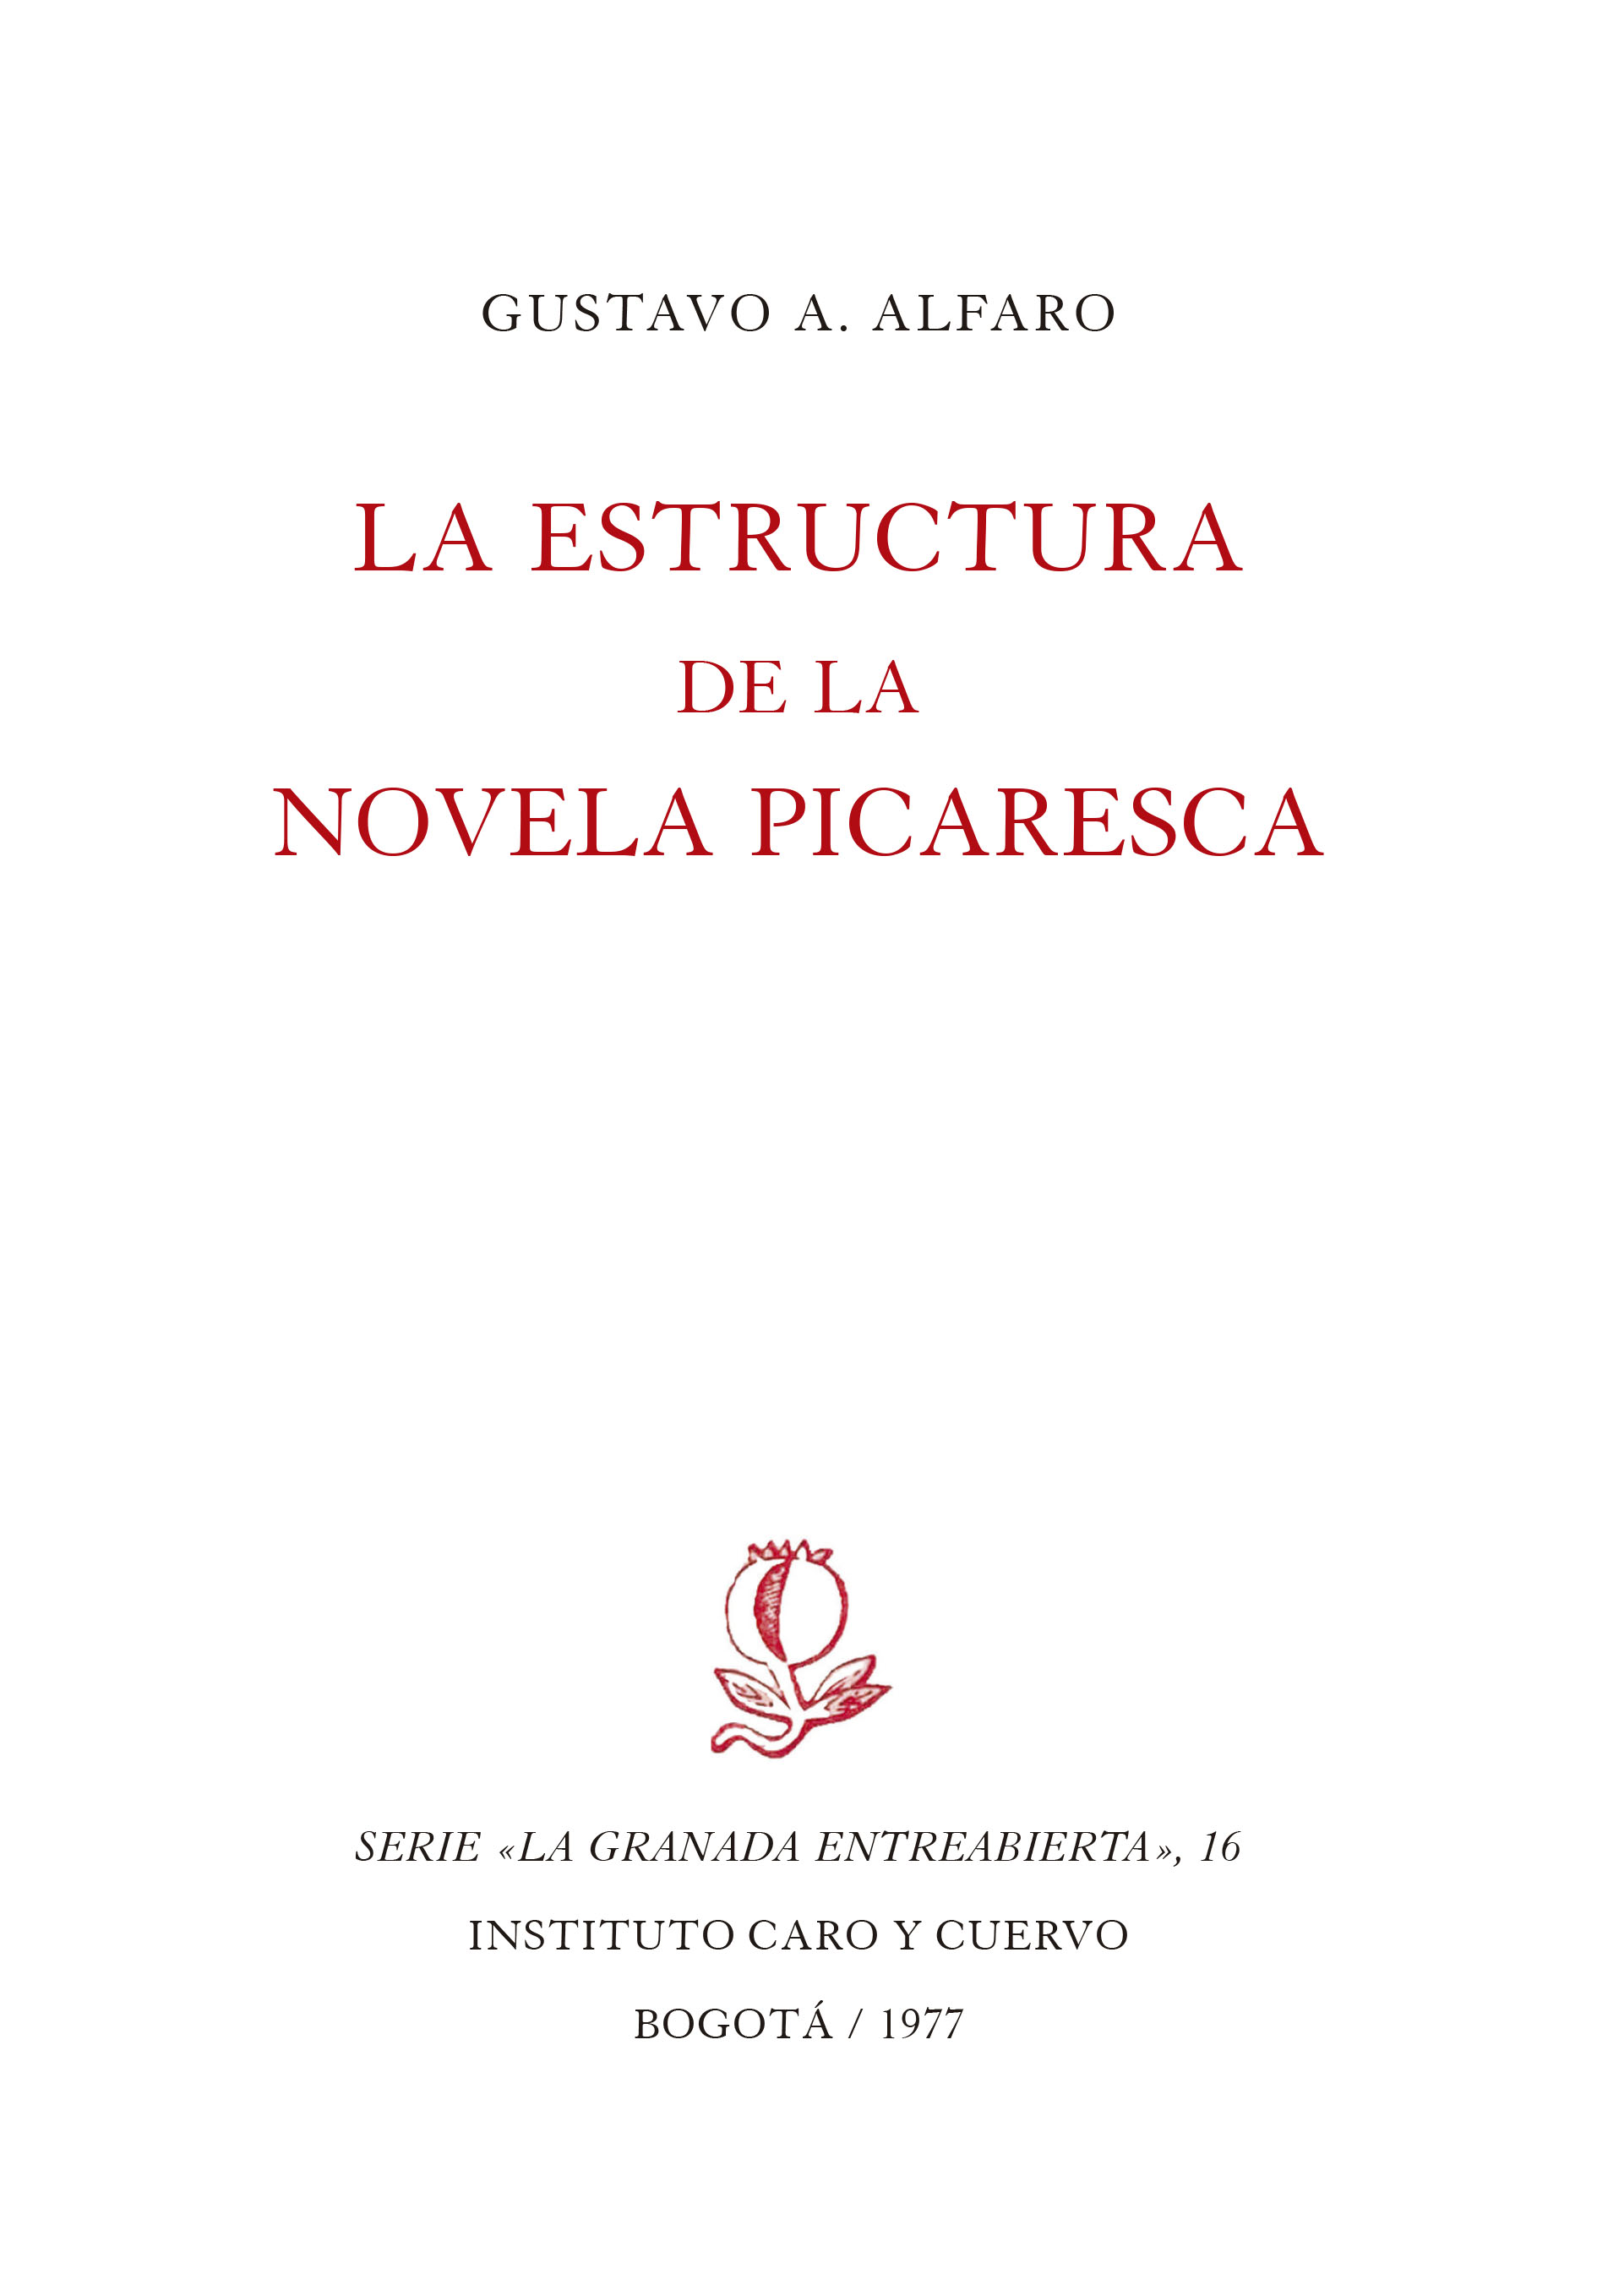 La estructura de la novela picaresca